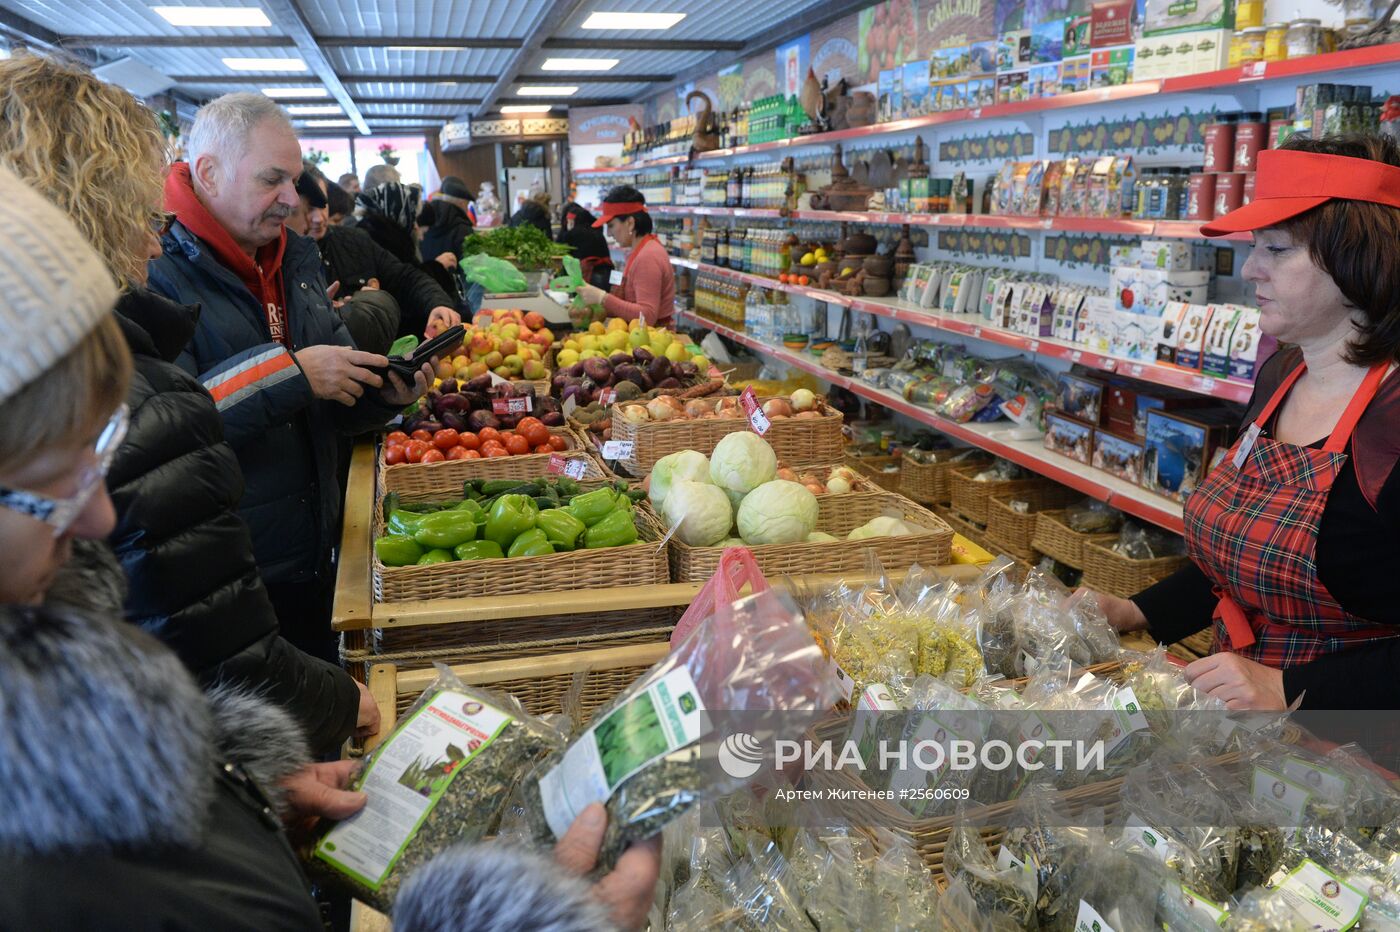 Первый магазин крымских товаров "Крымское подворье" открылся в Подмосковье